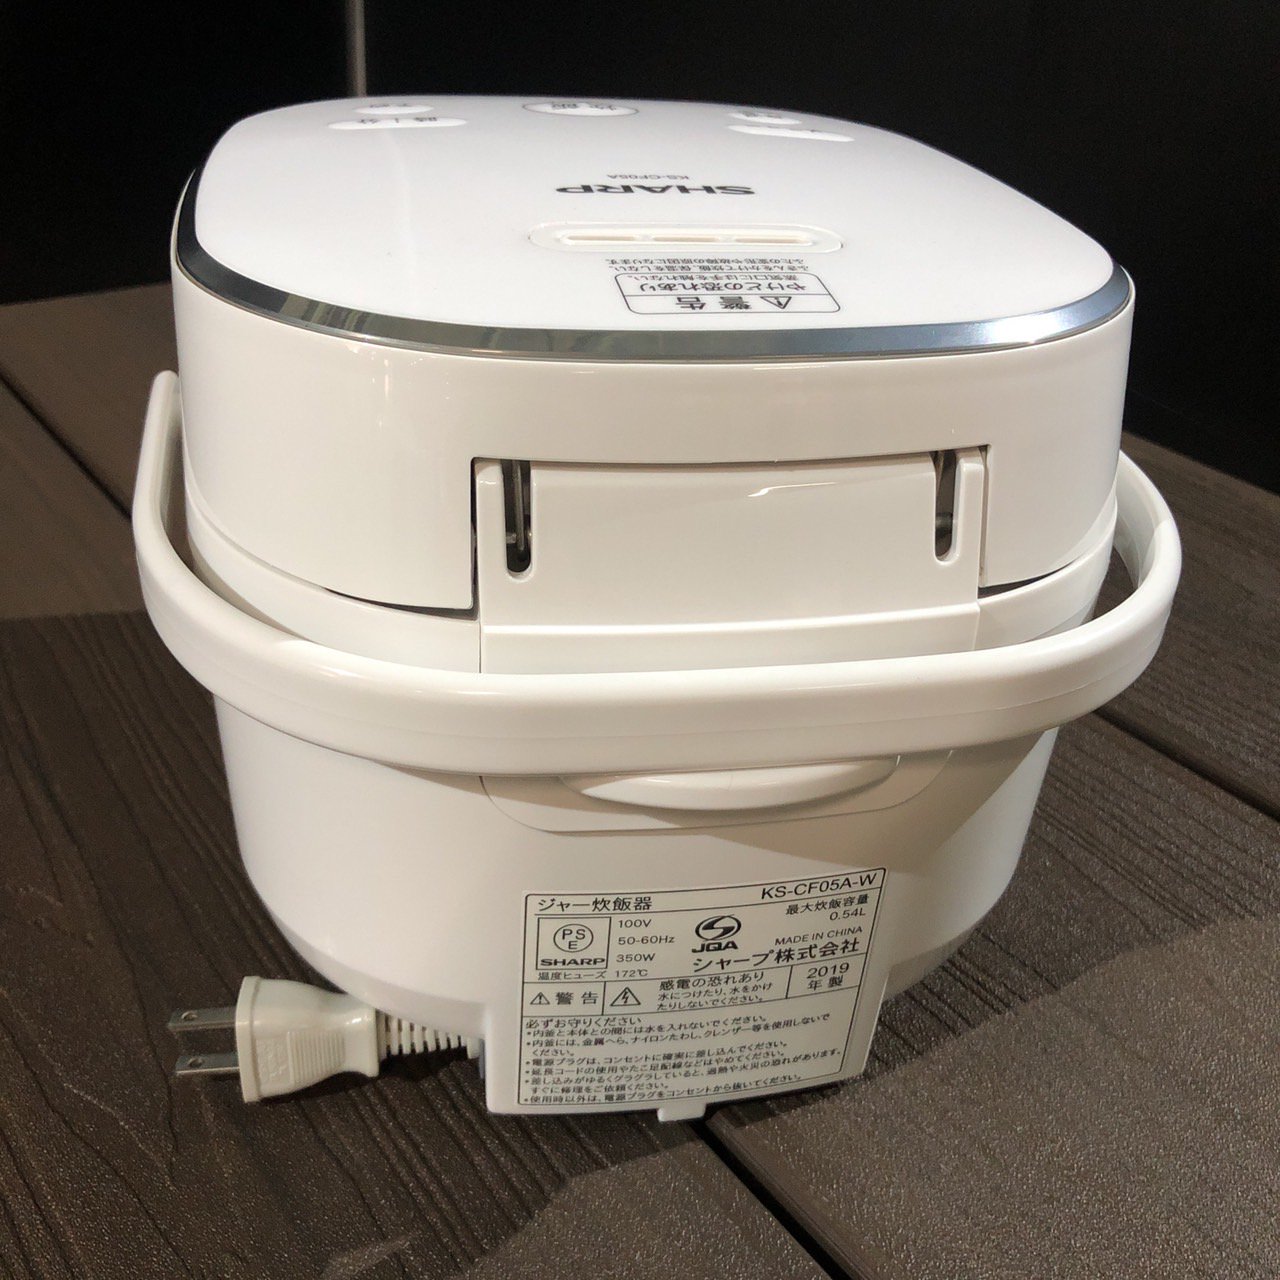 国際ブランド シャープSHARP炊飯器 KS-CF05A-W 0.54L